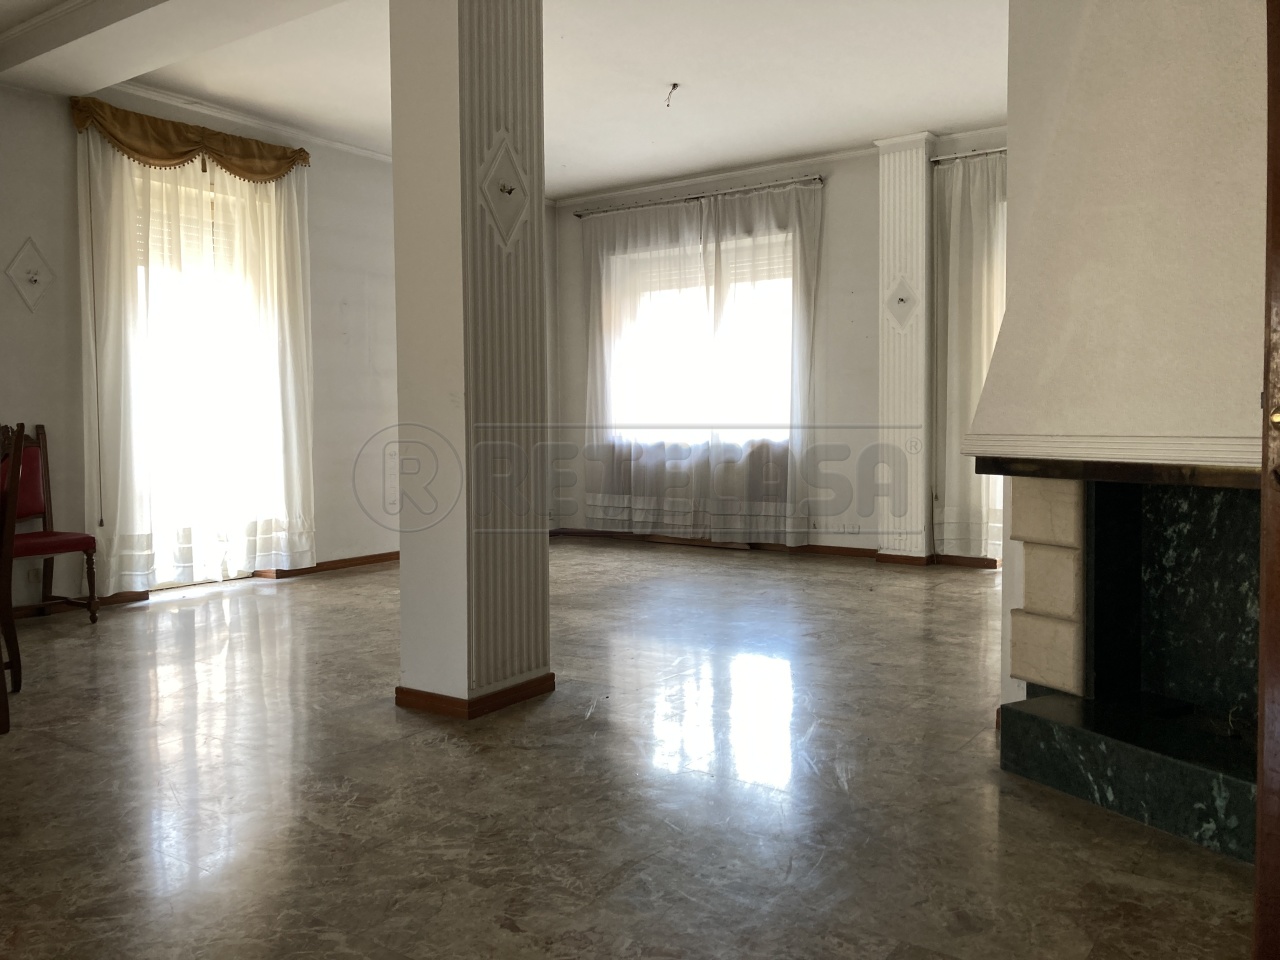 Appartamento in vendita a Crema, 5 locali, prezzo € 210.000 | PortaleAgenzieImmobiliari.it